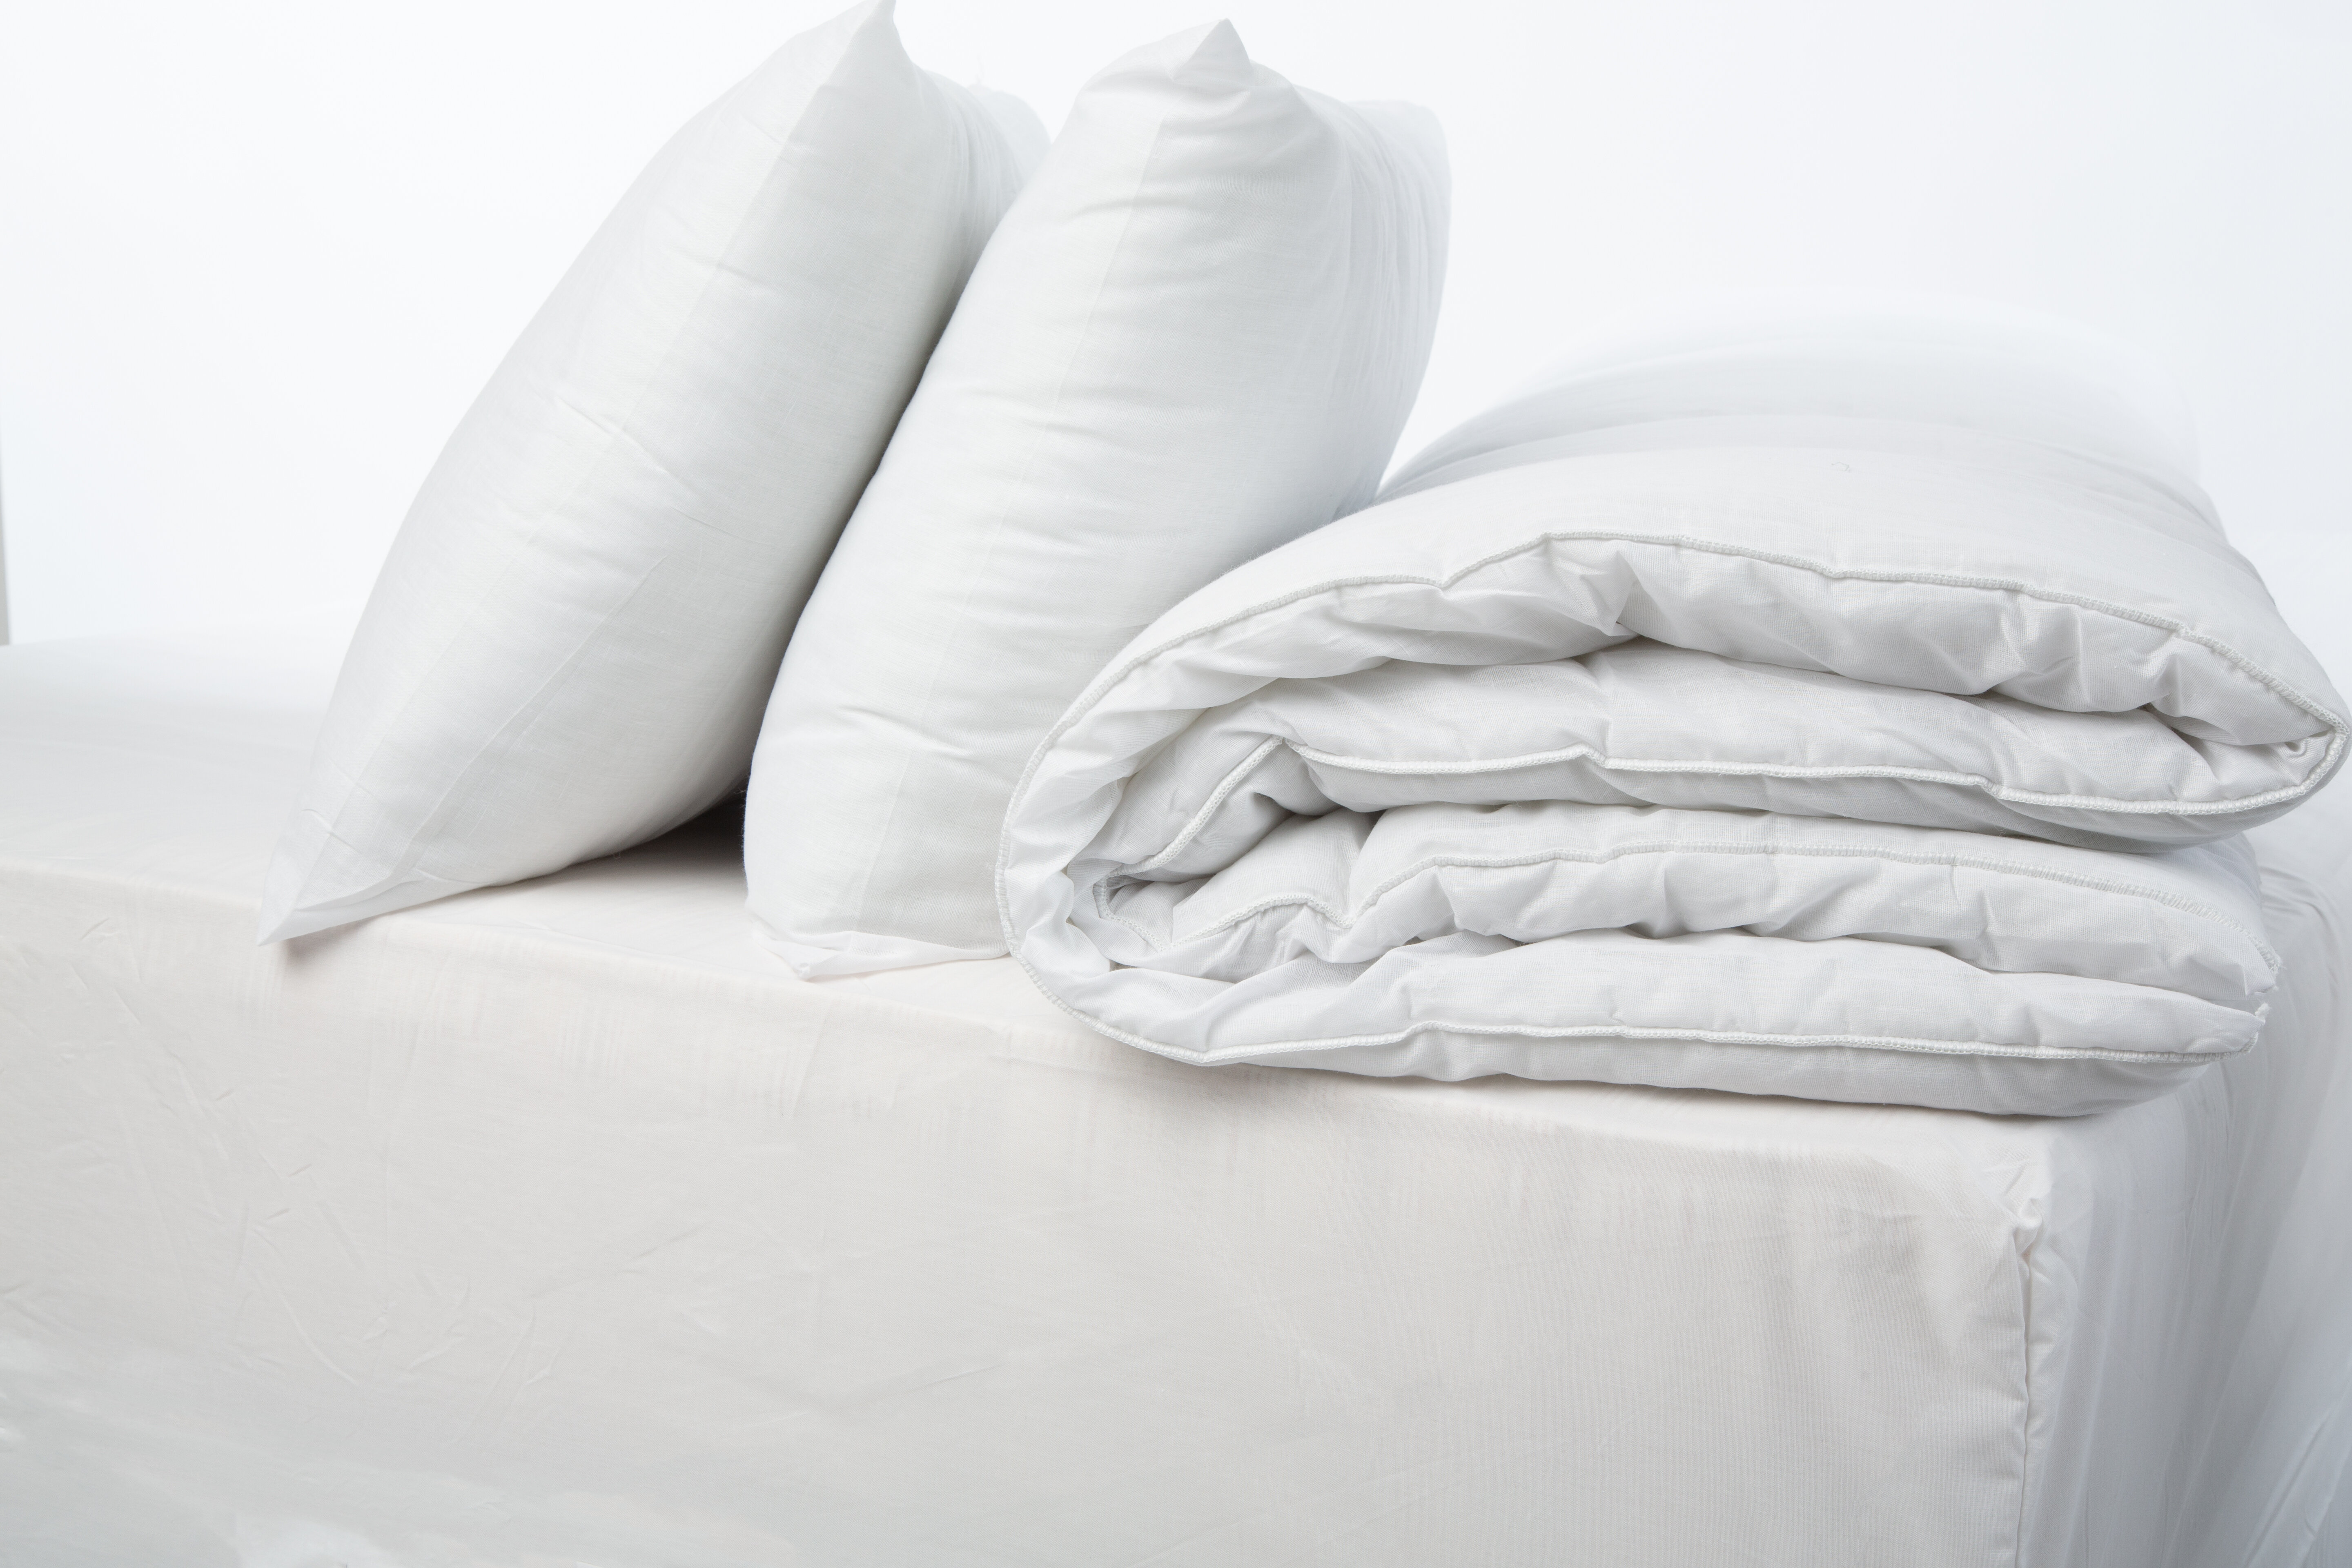 Symple Stuff 15 Tog Duvet With Pillows Reviews Wayfair Co Uk